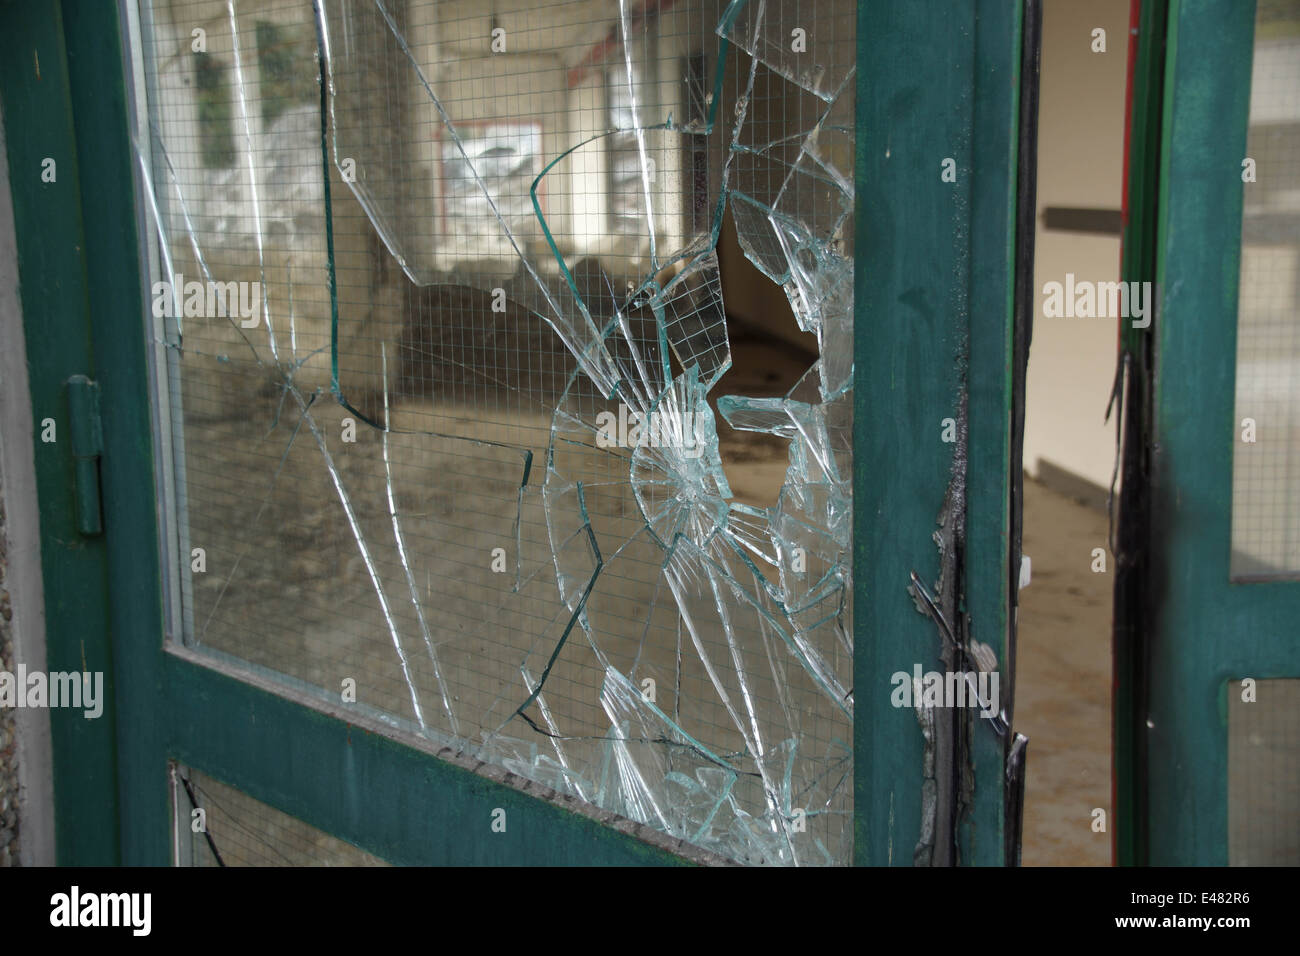 Broken glass door with green metal frame Stock Photo